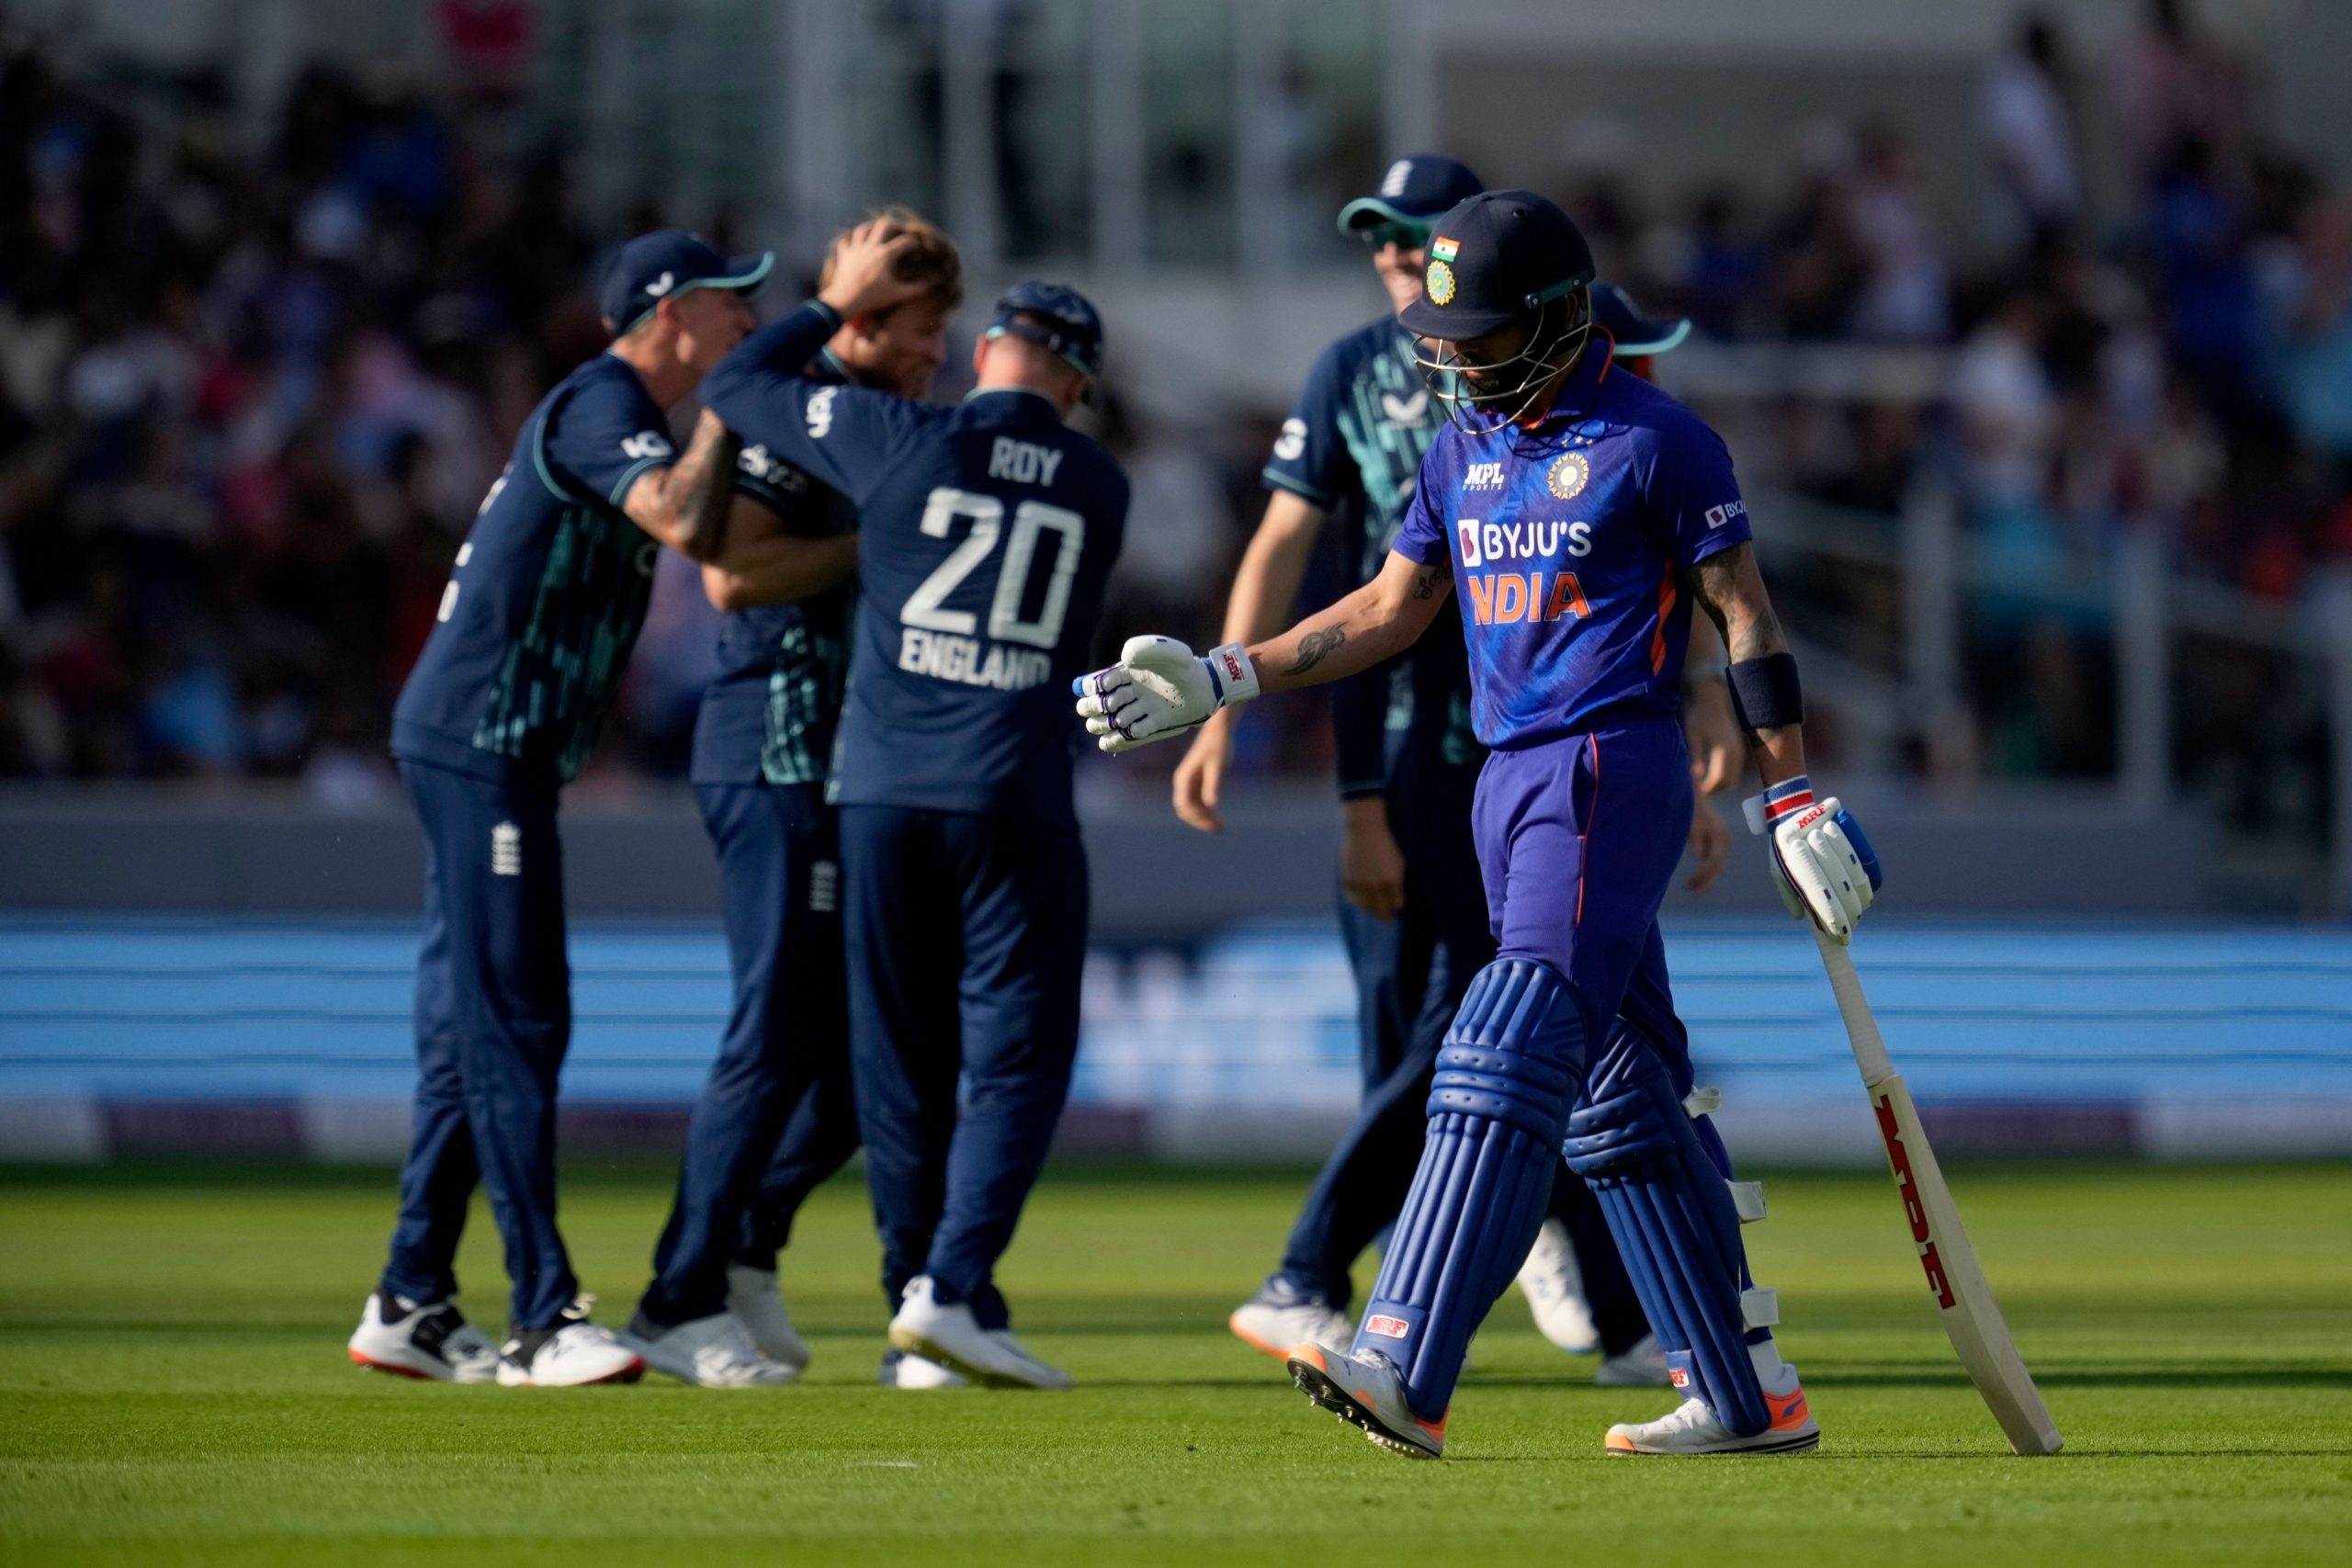 Virat Kohli records new low with 17 in 3rd ODI vs England